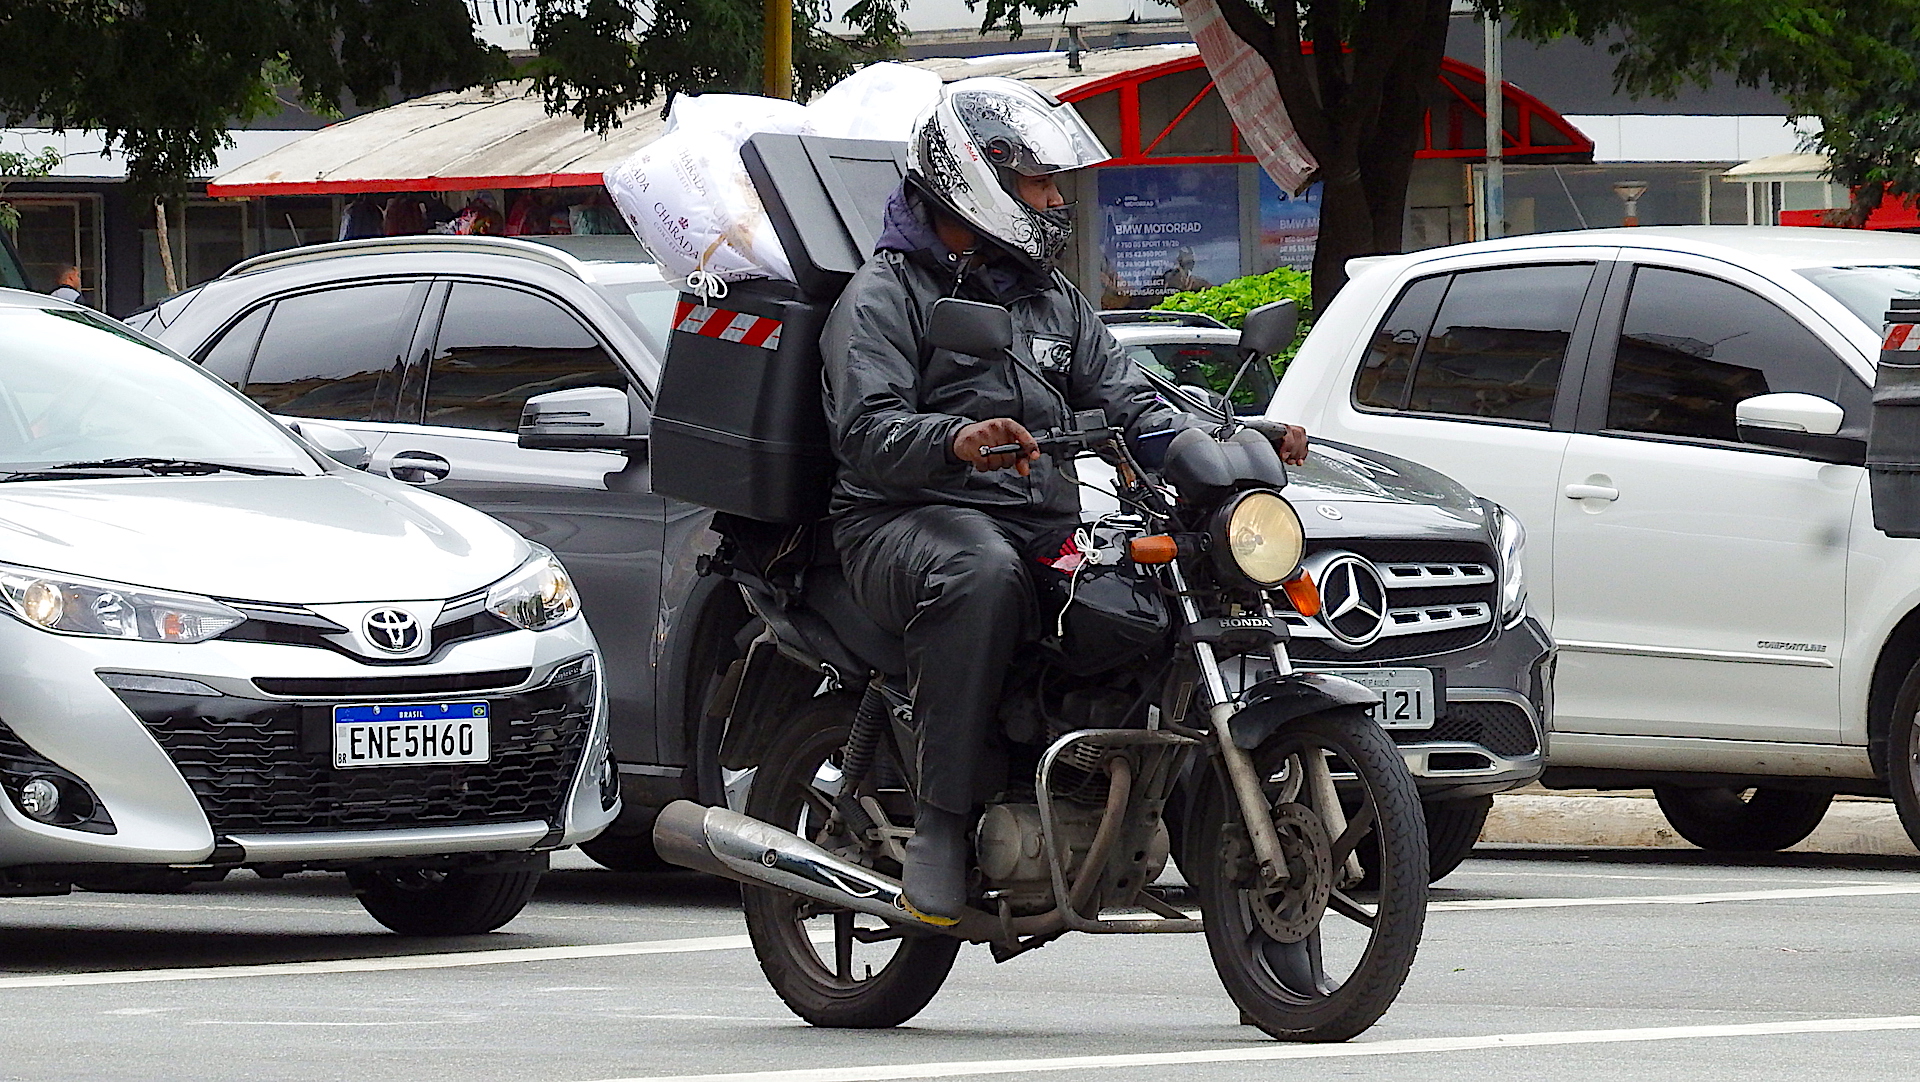 Motociclista em Moto Honda com Baú cheio